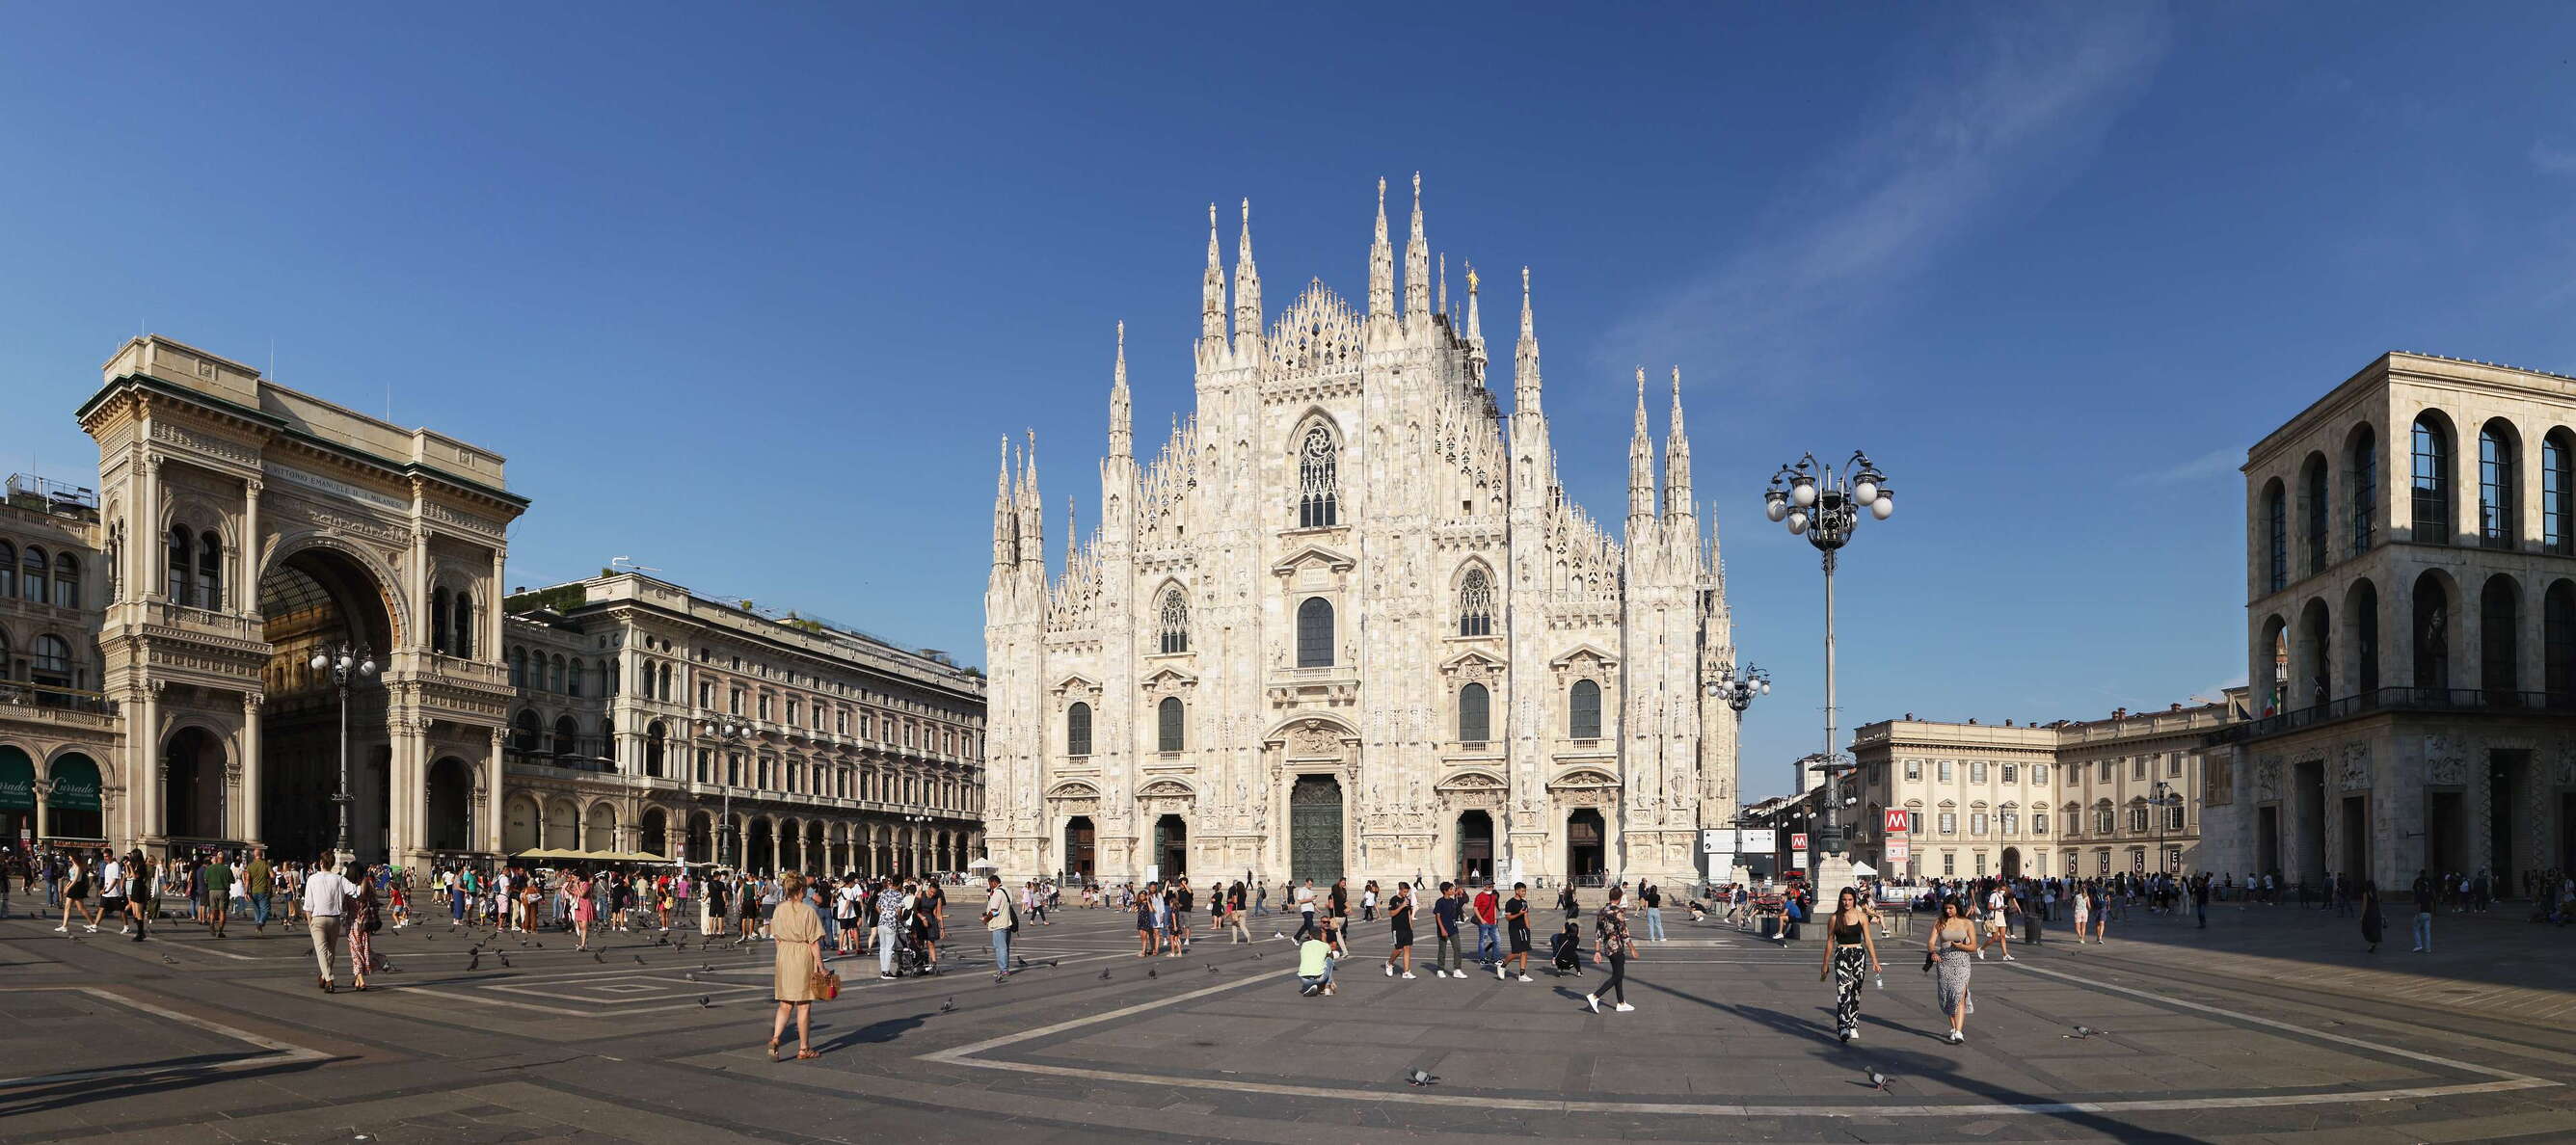 Milano | Piazza del Duomo with Duomo di Milano